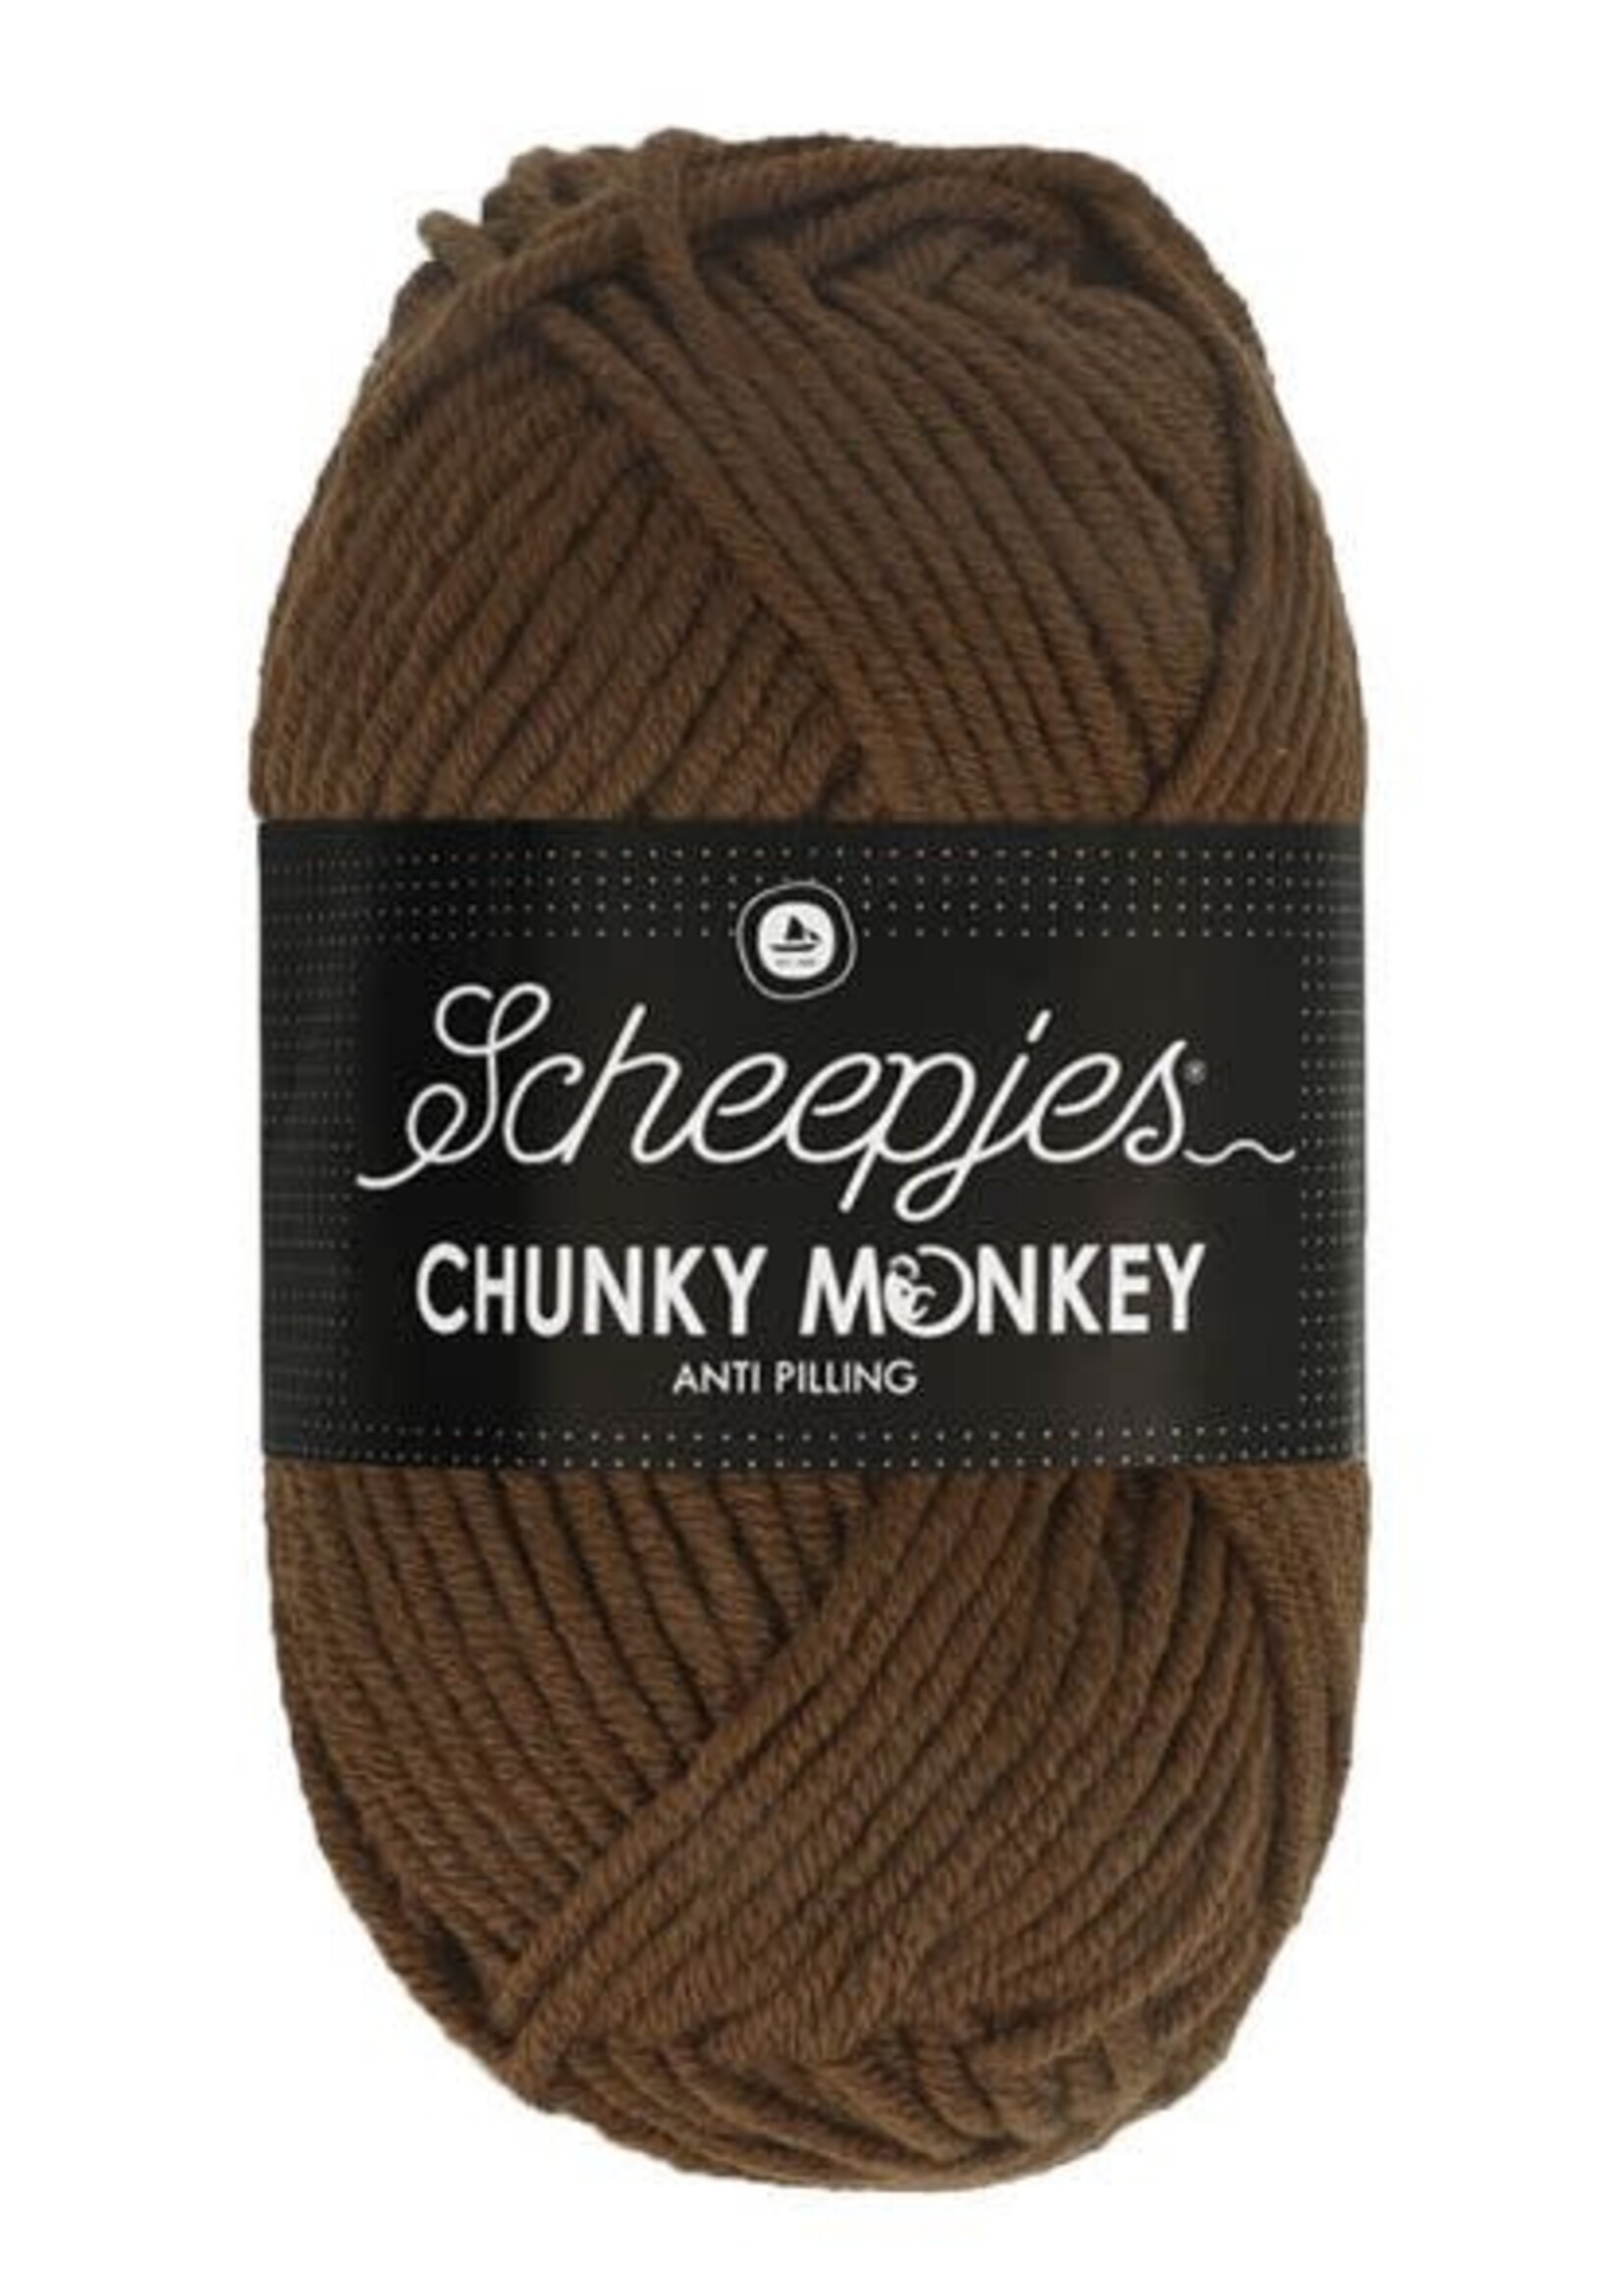 Scheepjes Chunky Monkey - Scheepjes -1054 Tawny